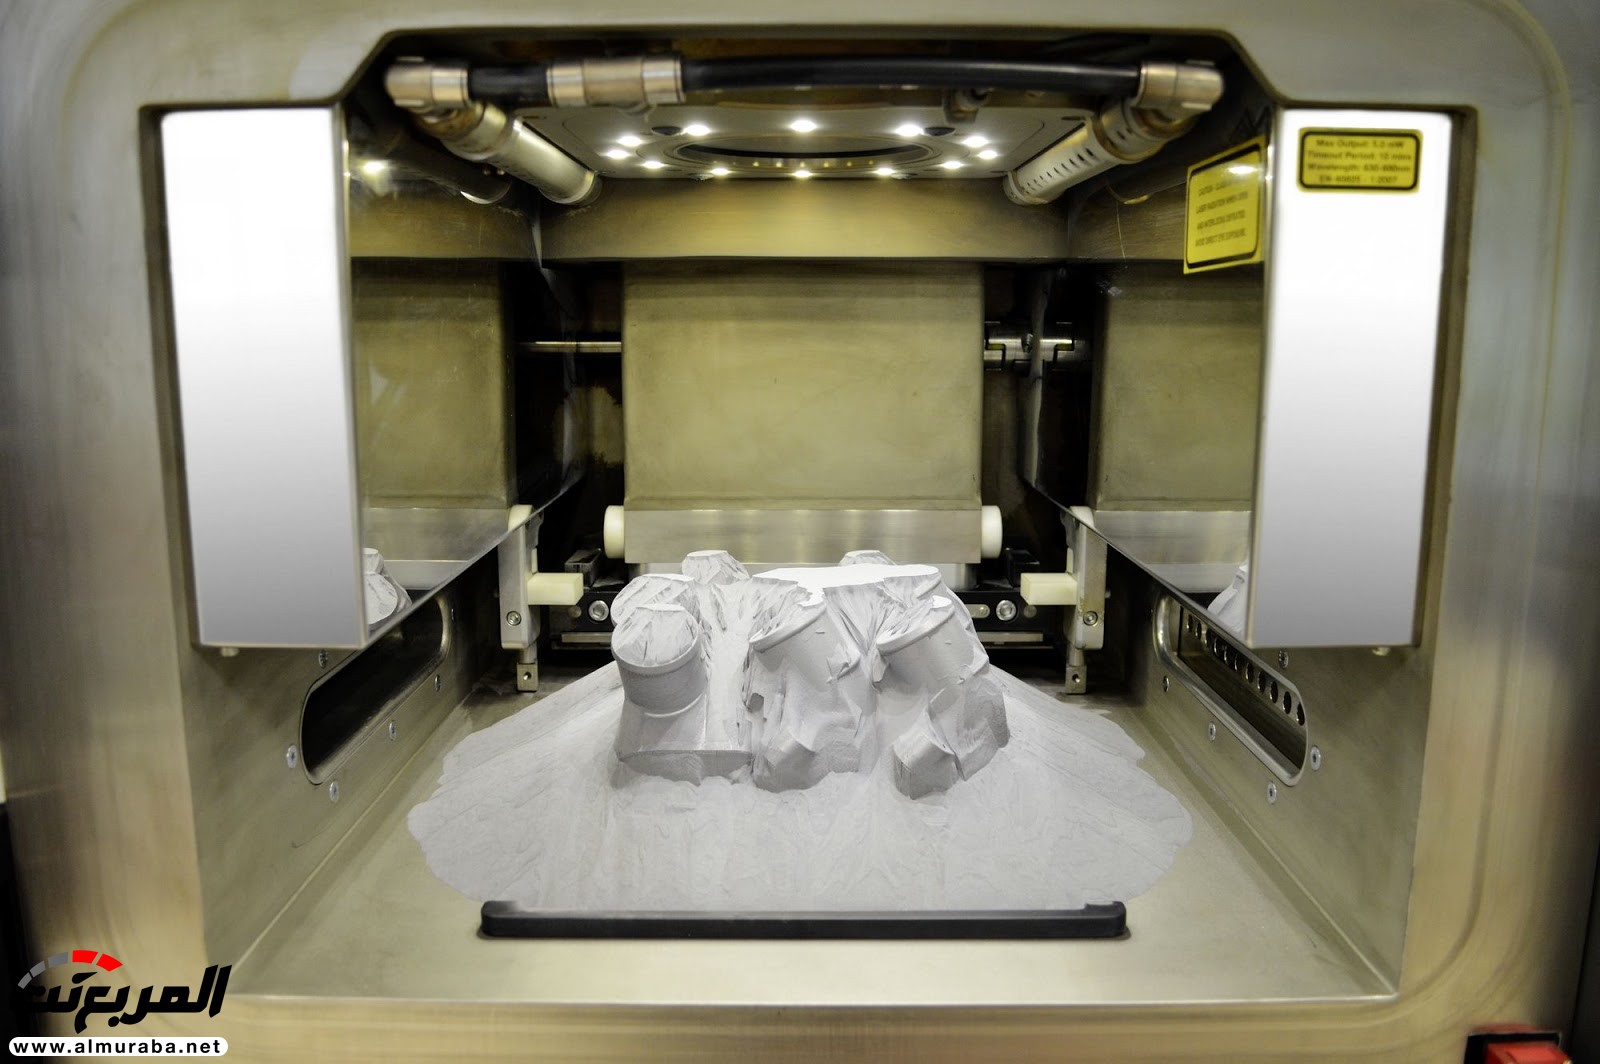 مرسيدس استطاعت تصنيع قطع غيار بطابعة 3D 9